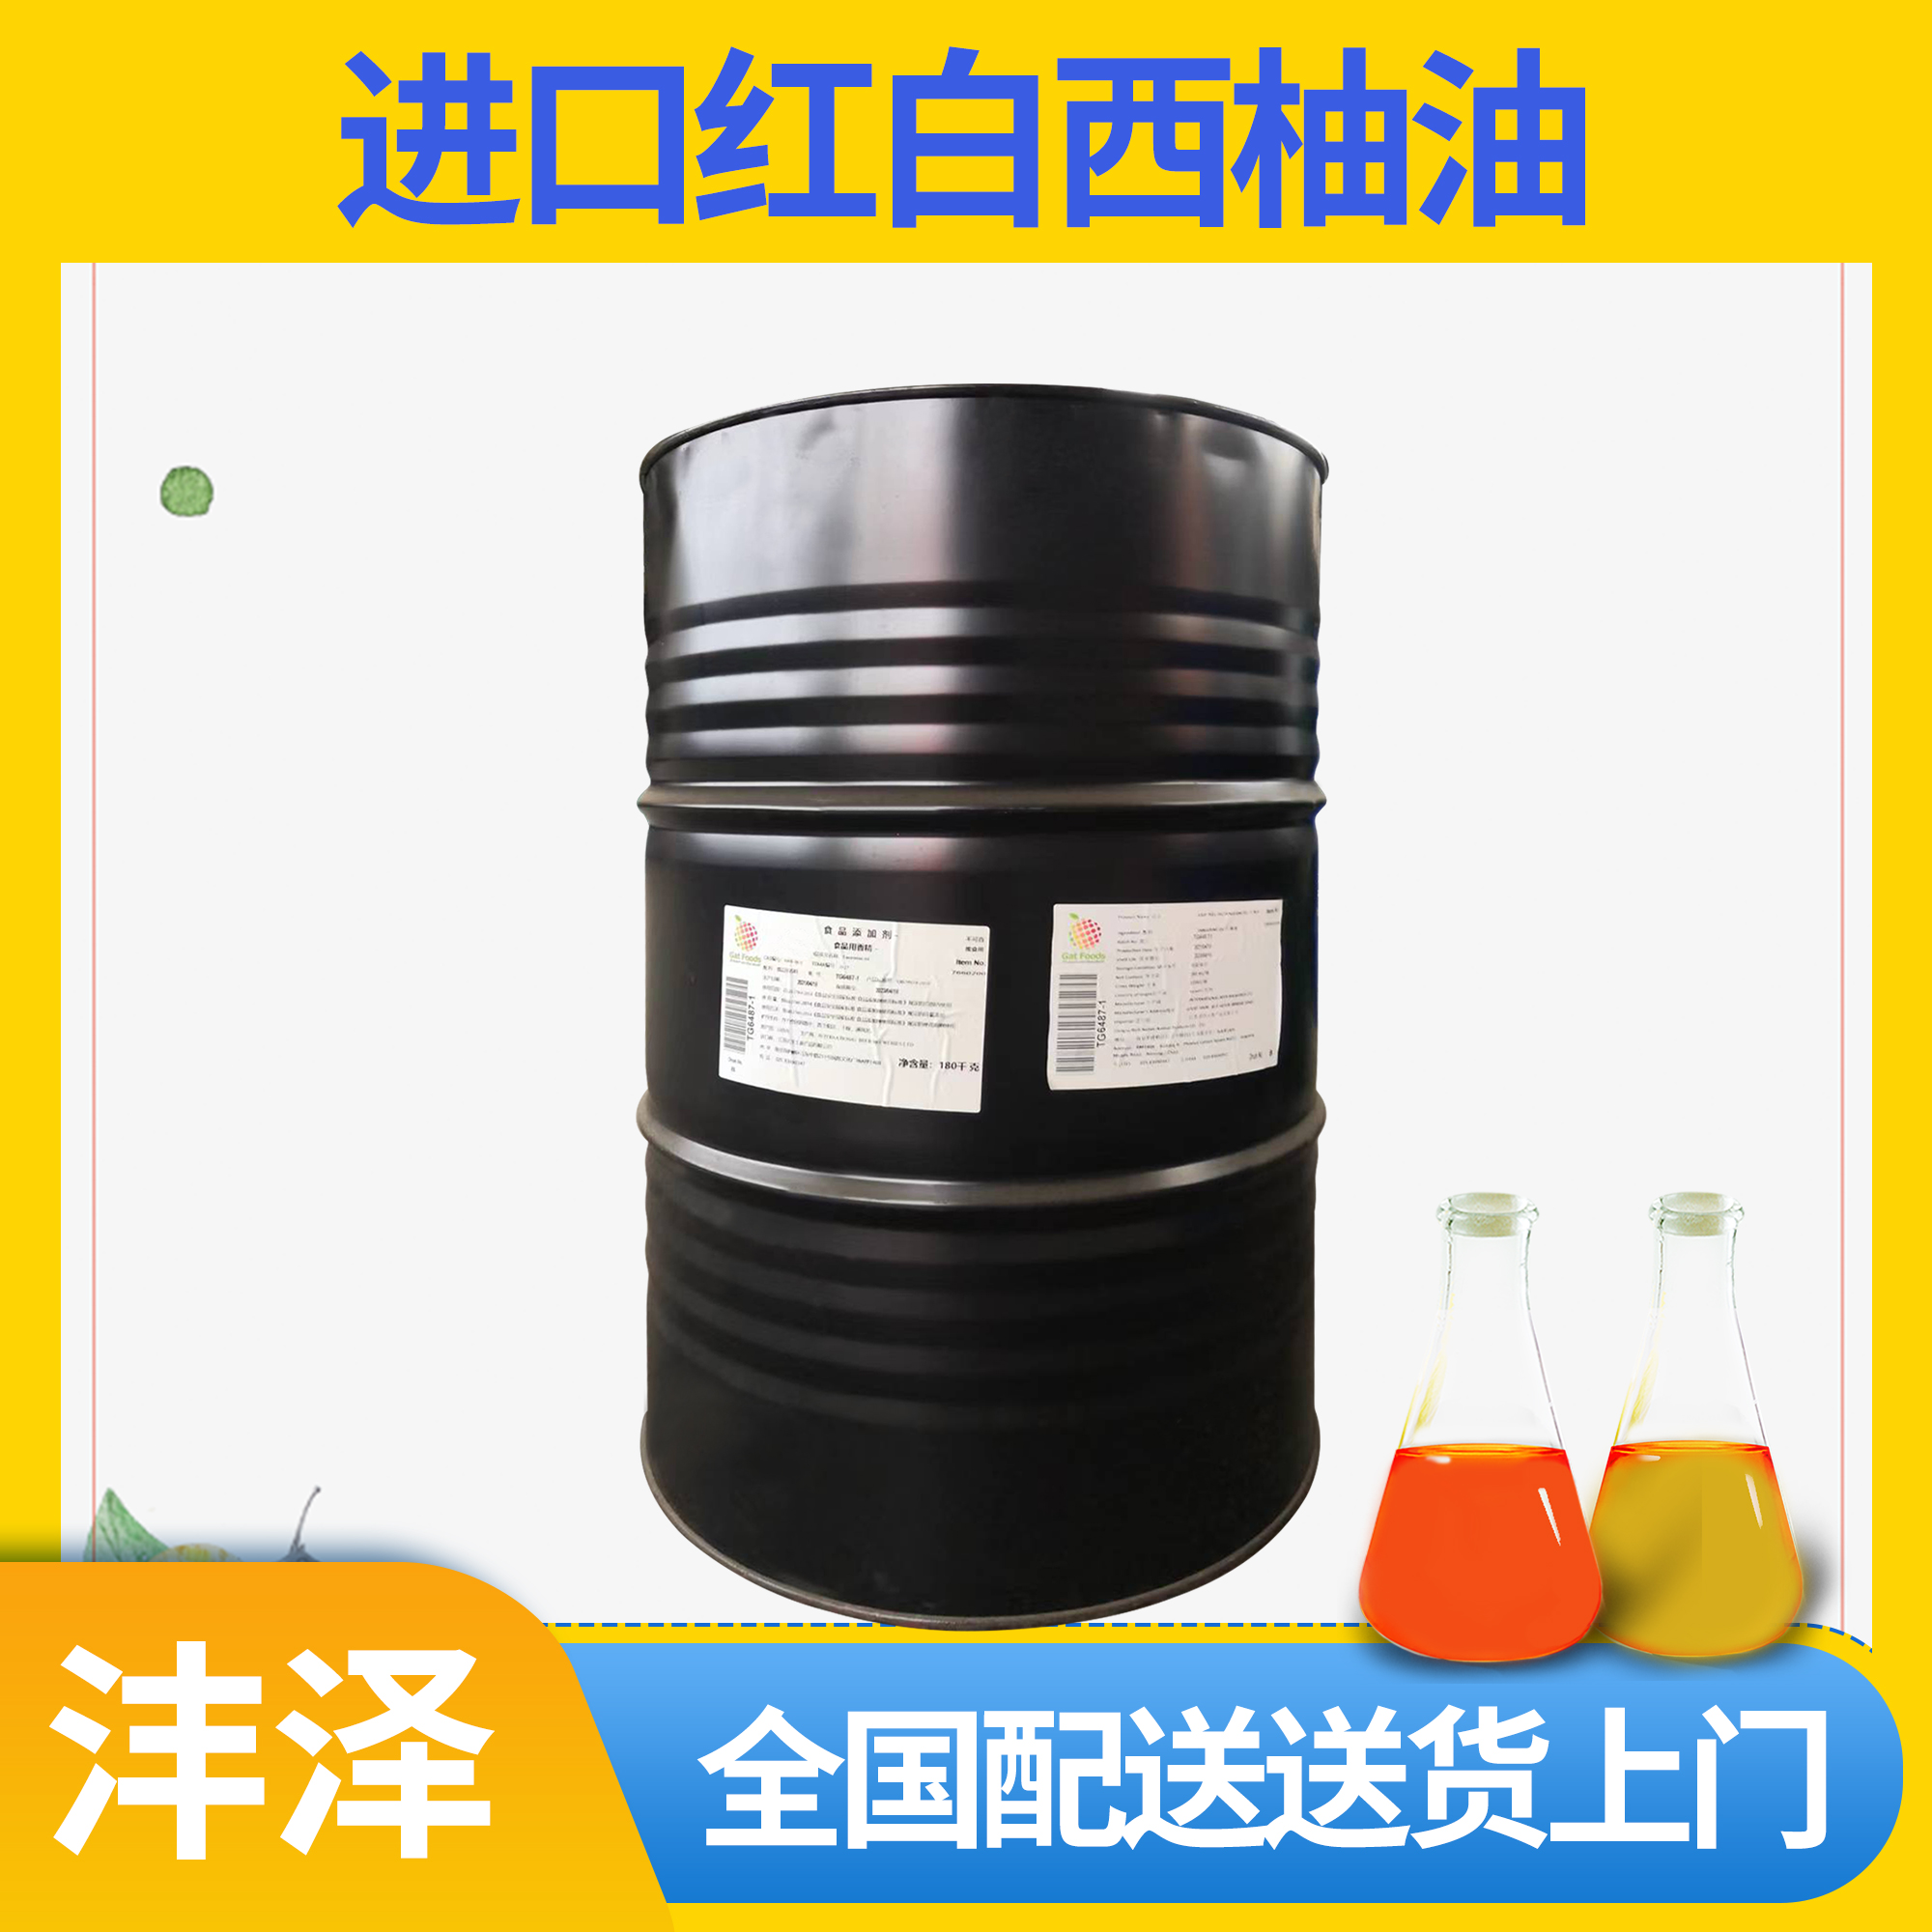 葡萄柚果油 红白进口西柚油效果 原厂直供提供进口证明【沣泽】